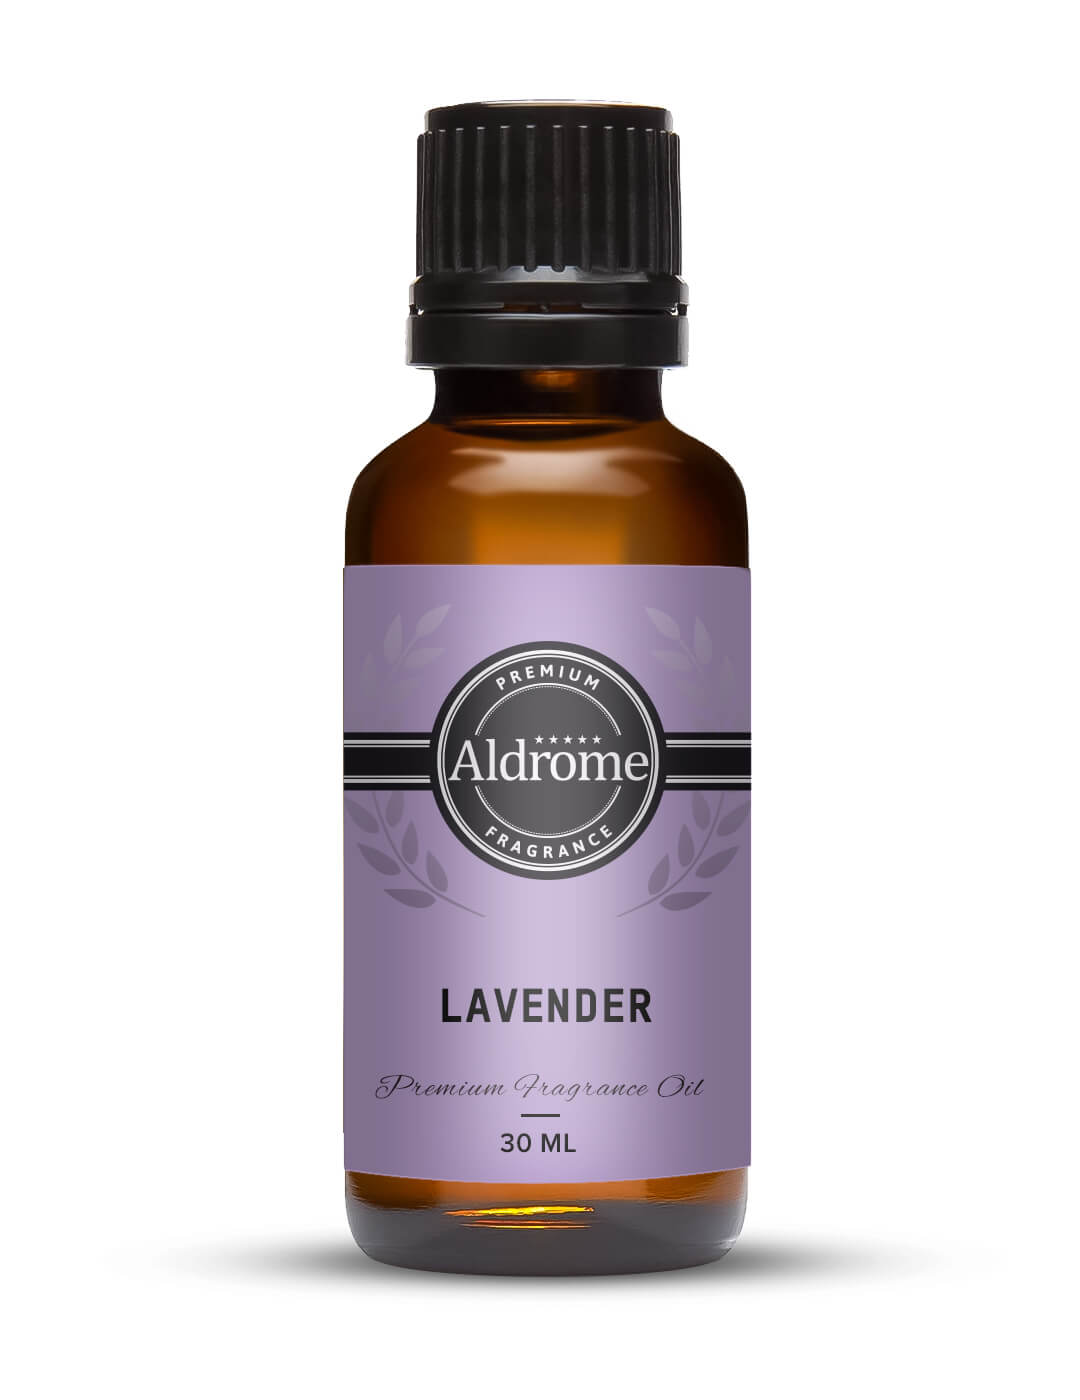 Buy Lavender Fragrance Oil - 30ml at Best price | Aldrome Premium Fragrance Oil